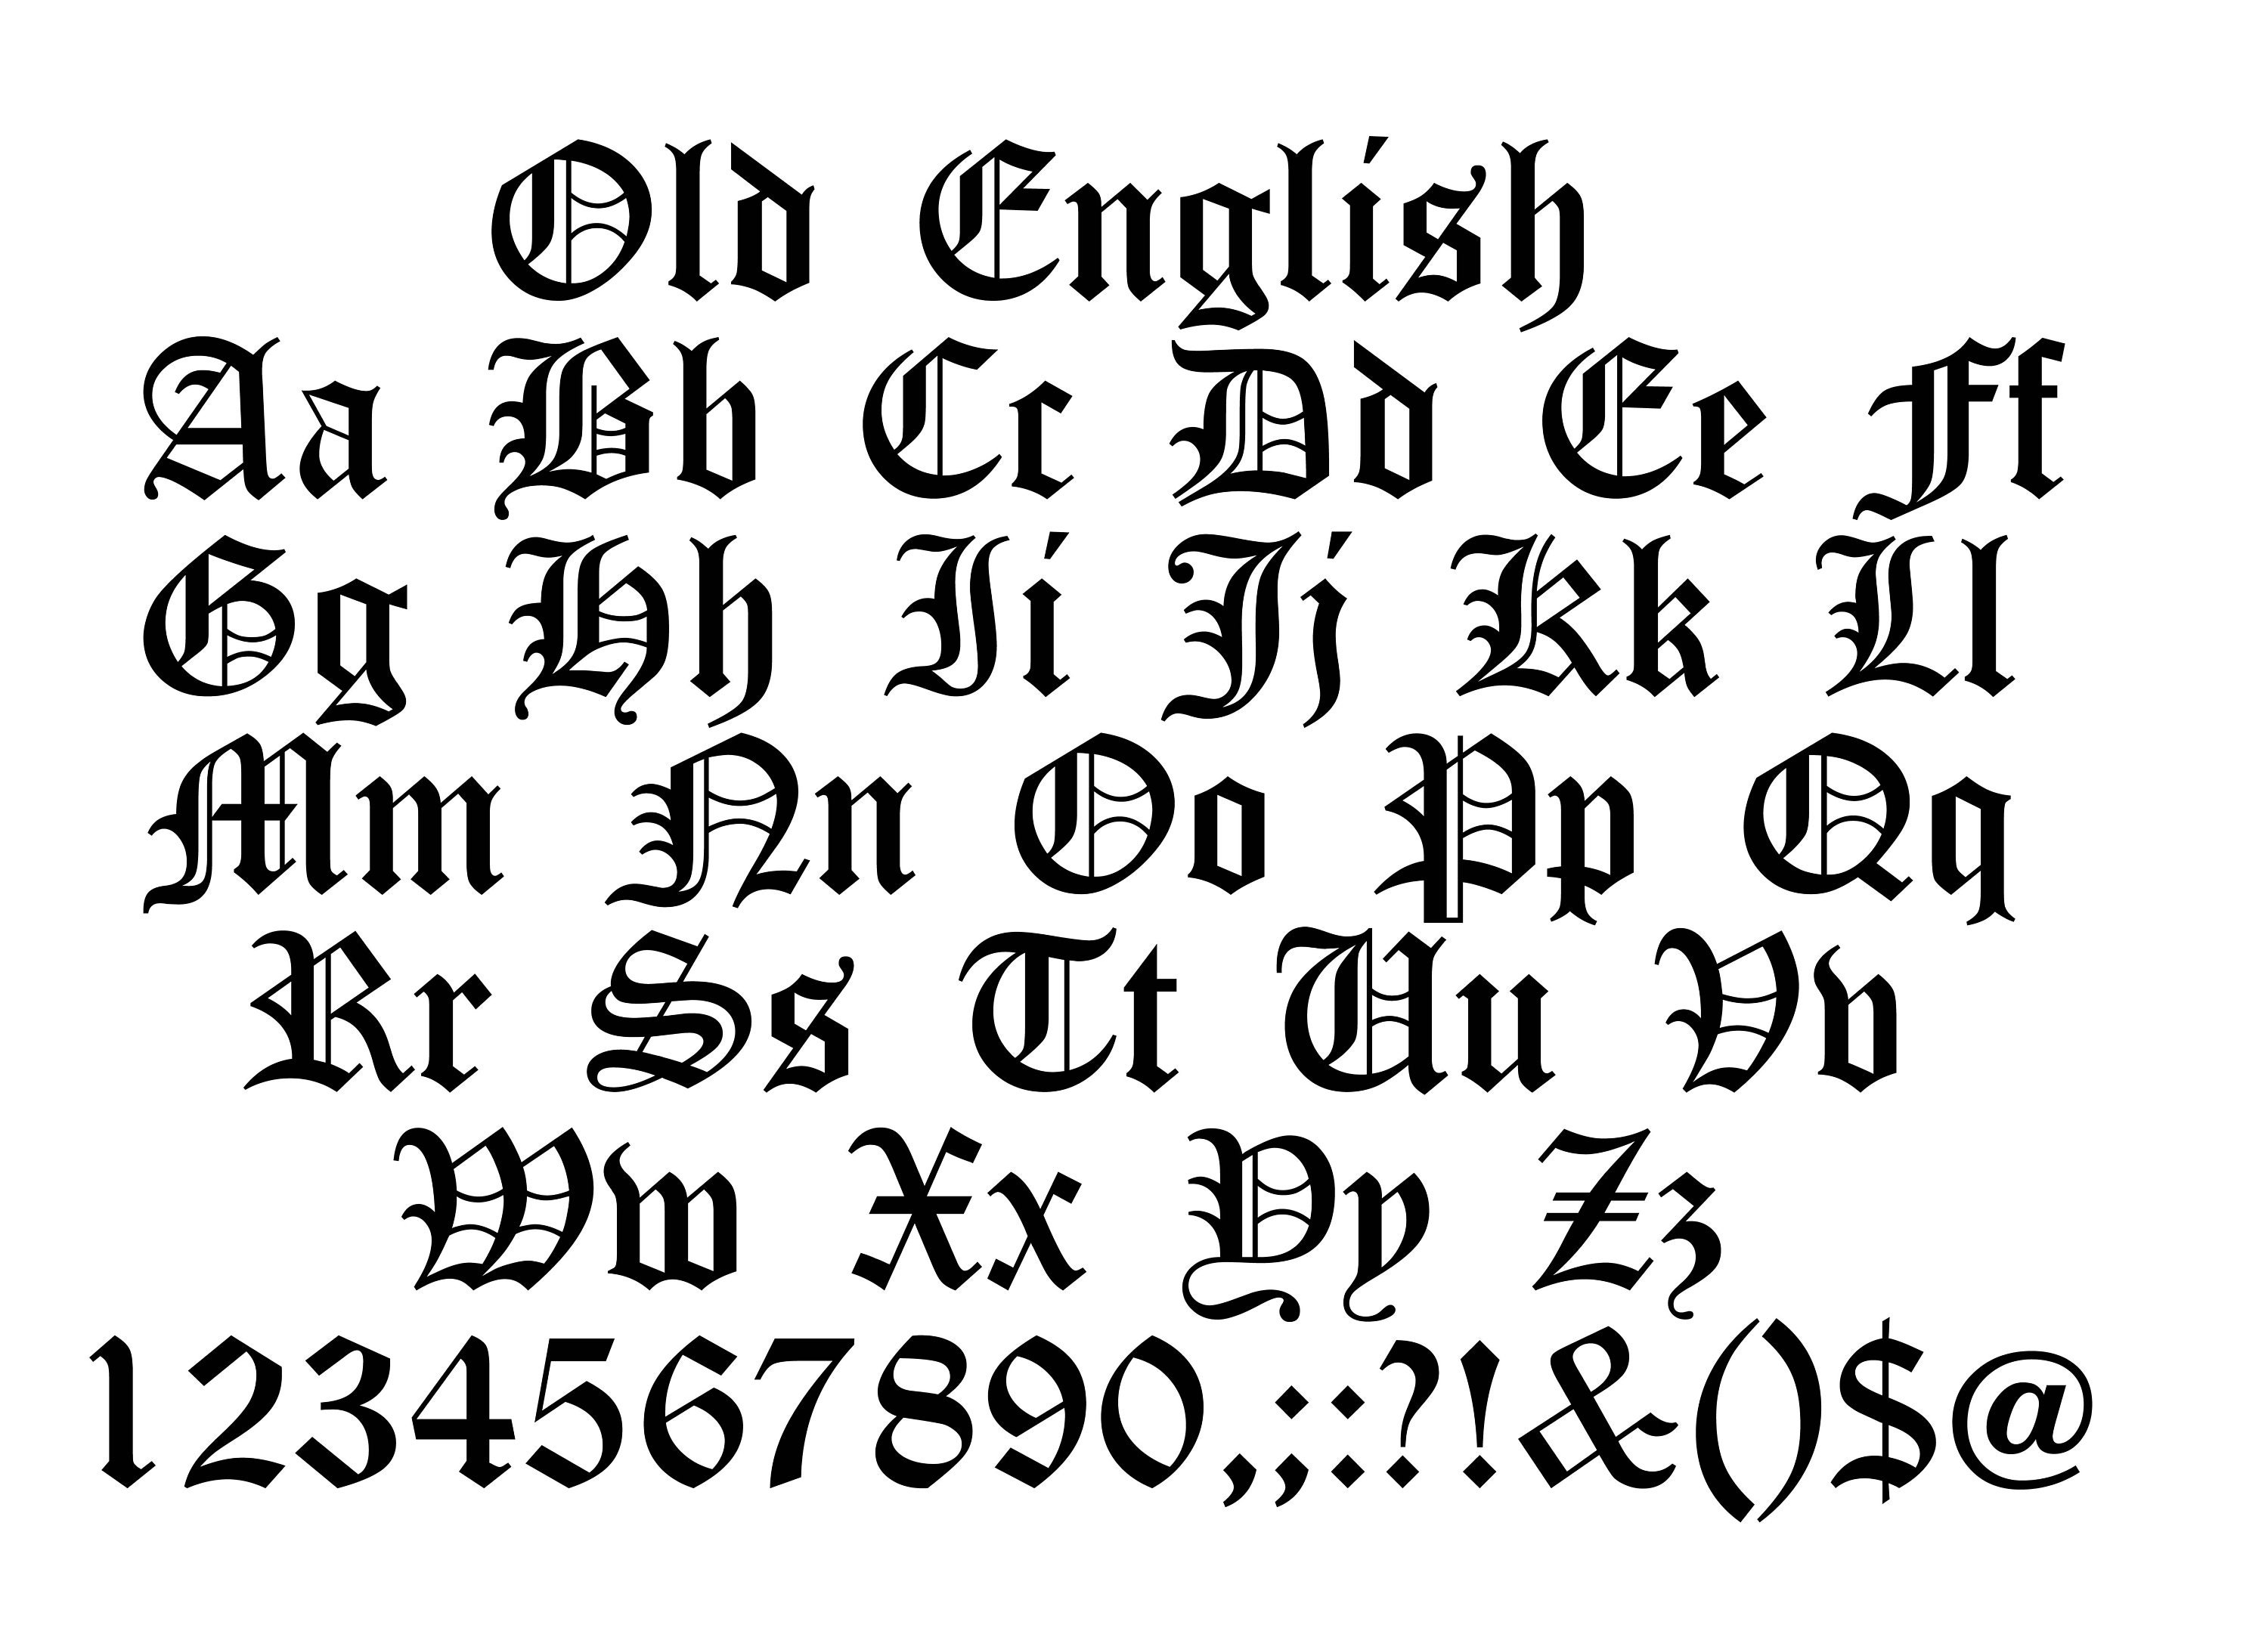 Bộ sưu tập Font Old English hiện đại và đẳng cấp